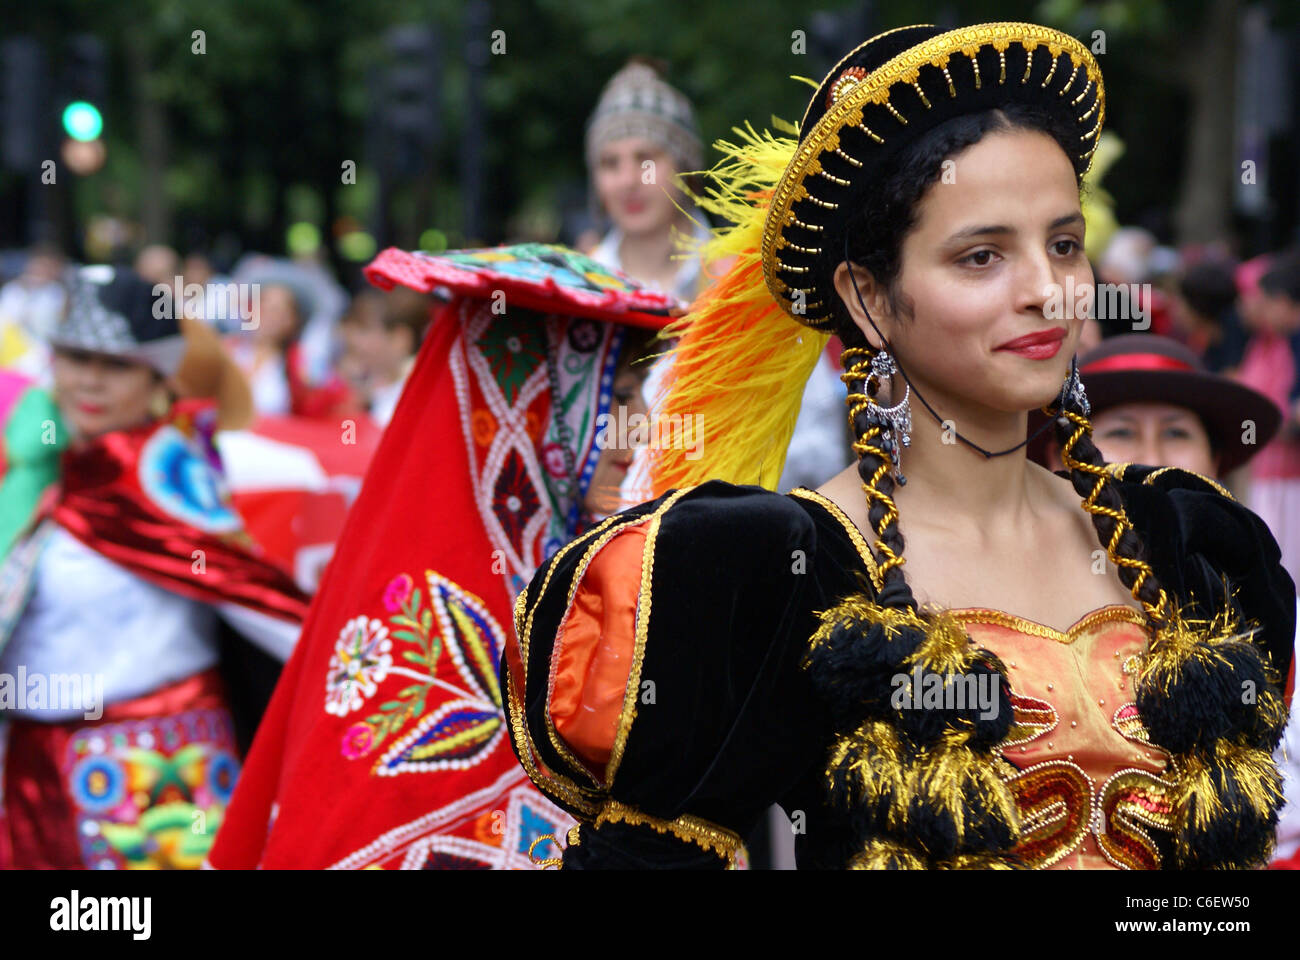 Gli interpreti di Carnevale del Pueblo, in Europa la più grande celebrazione della cultura latino-americana. Foto Stock